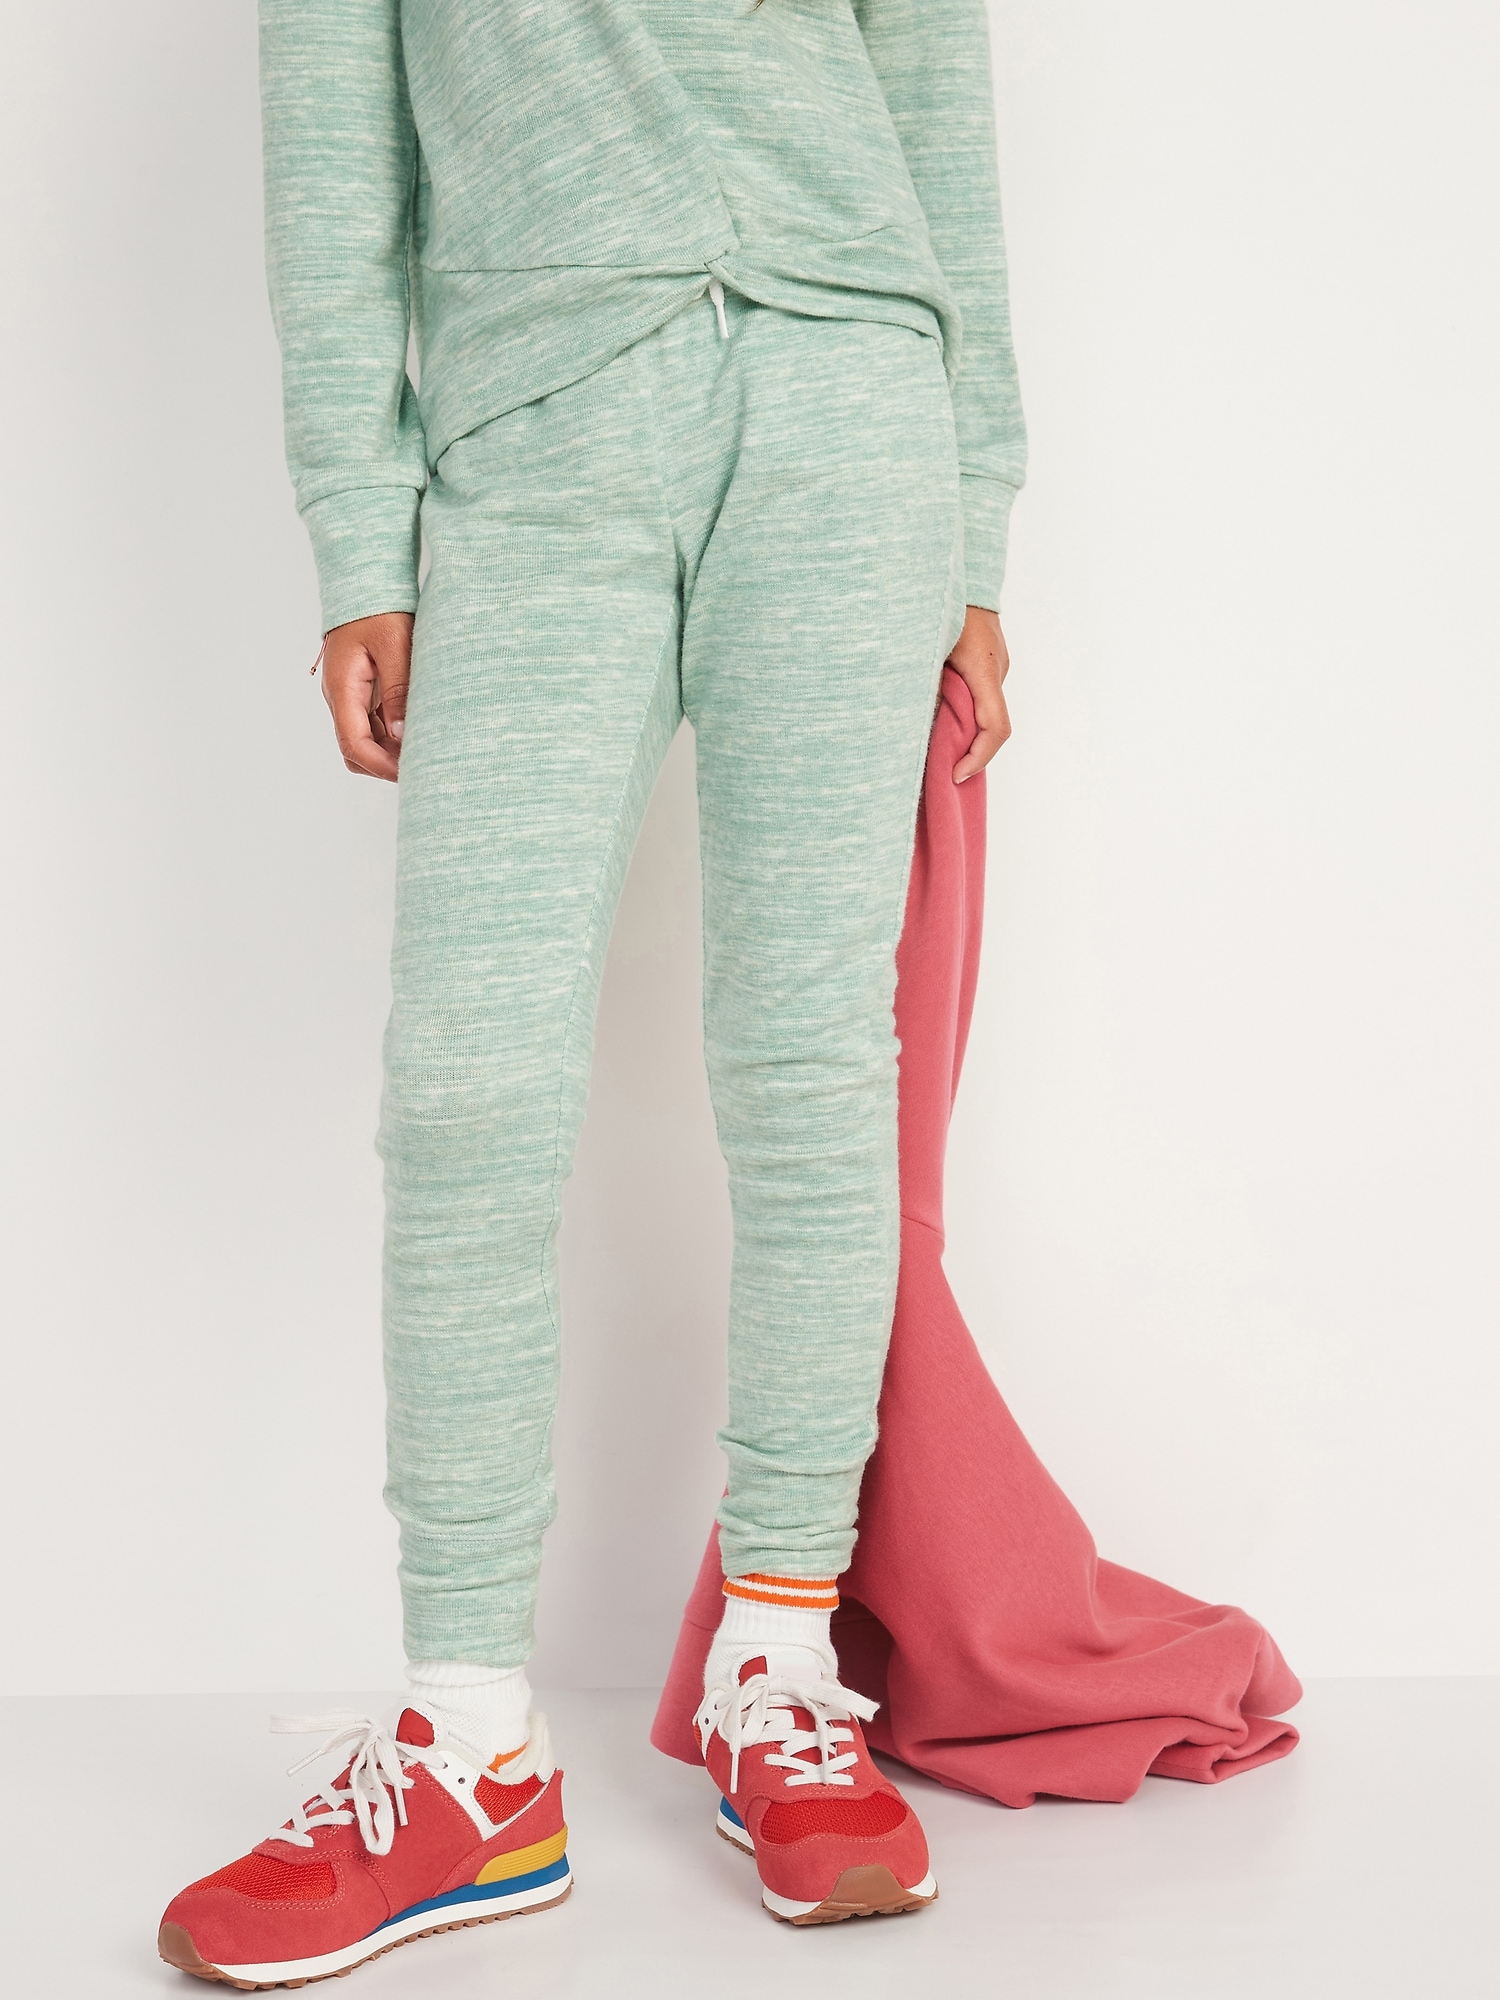 Cozy-Knit Jogger Leggings for Girls